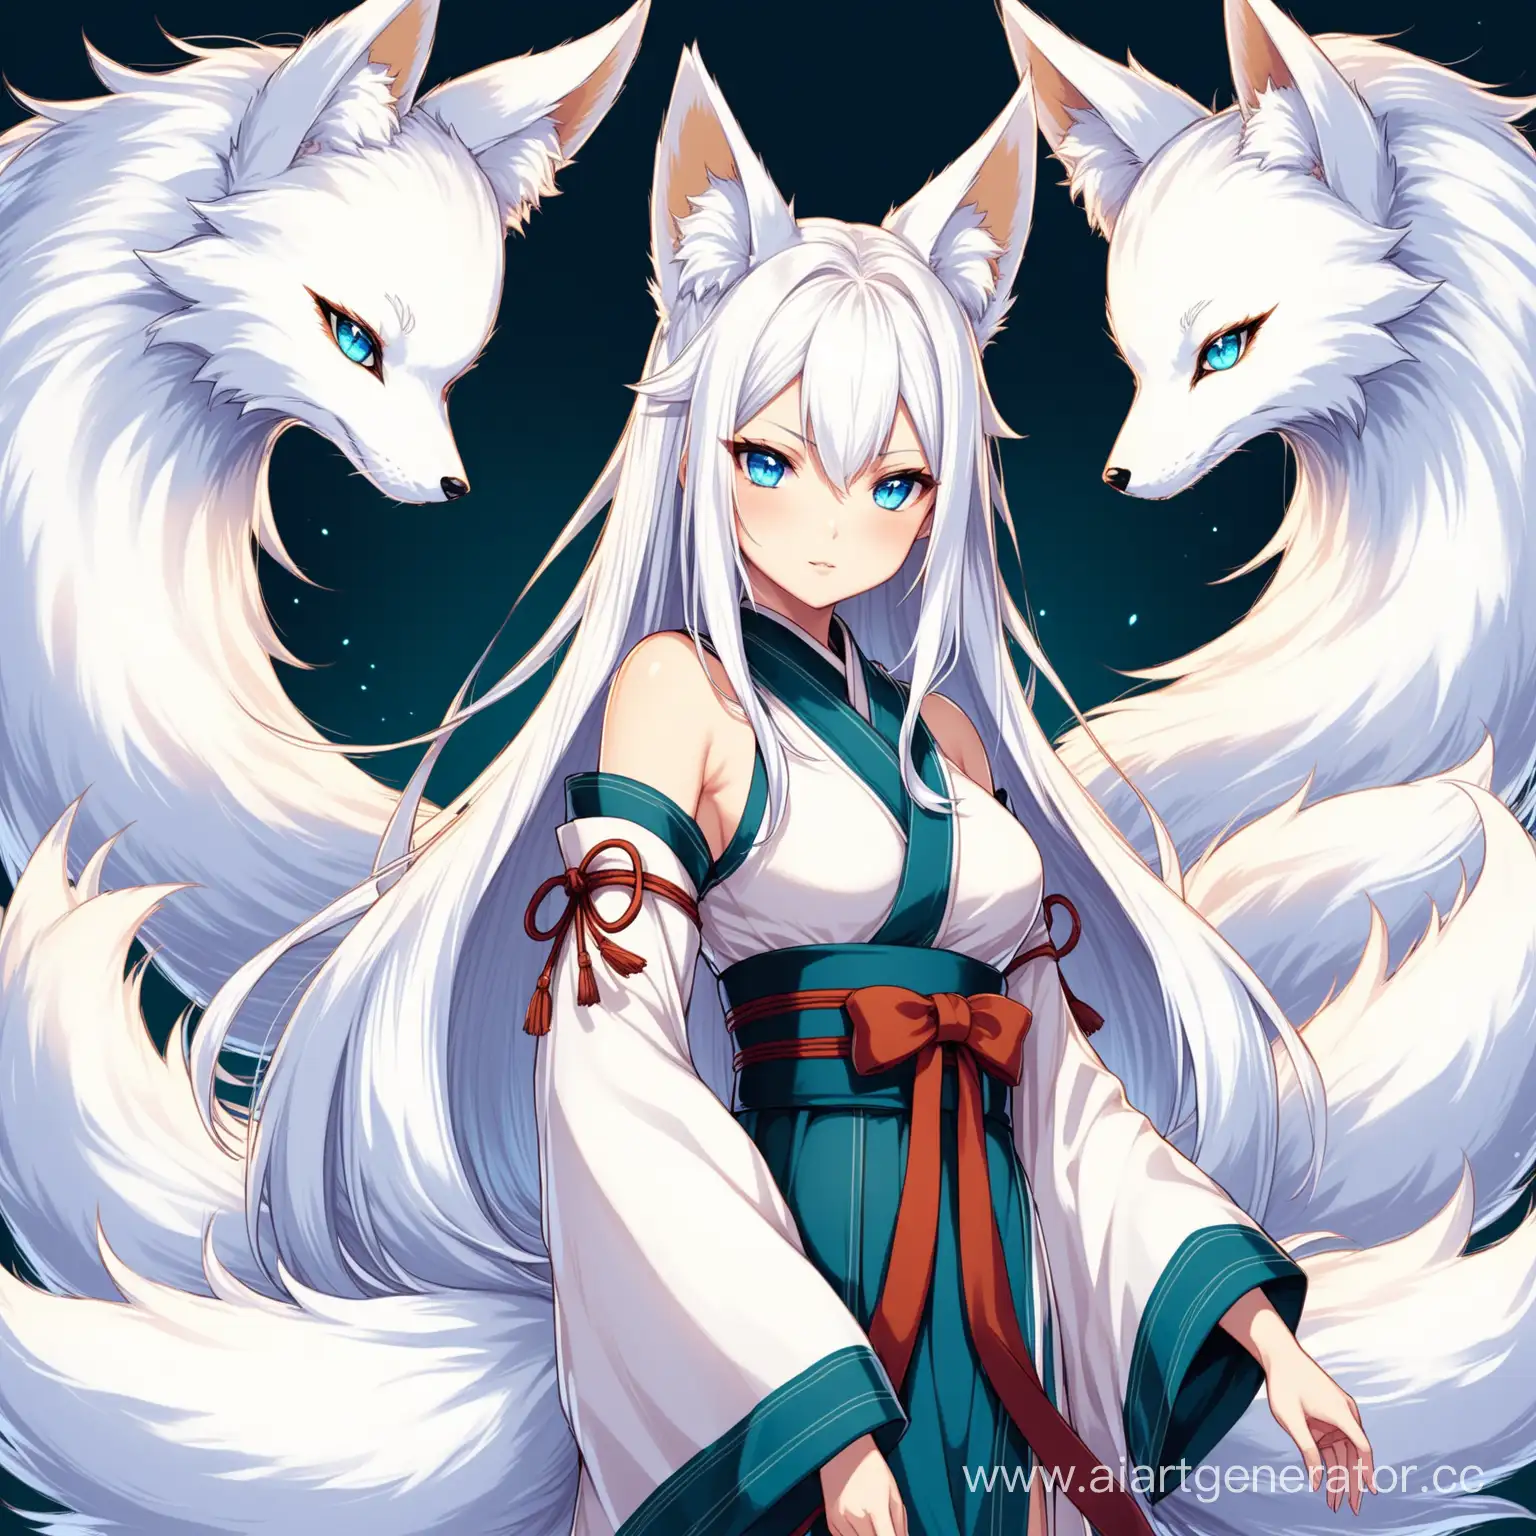 Девушка кицунэ с одиннадцатью хвостами, белыми волосами и лазурными глазами с большой грудью
